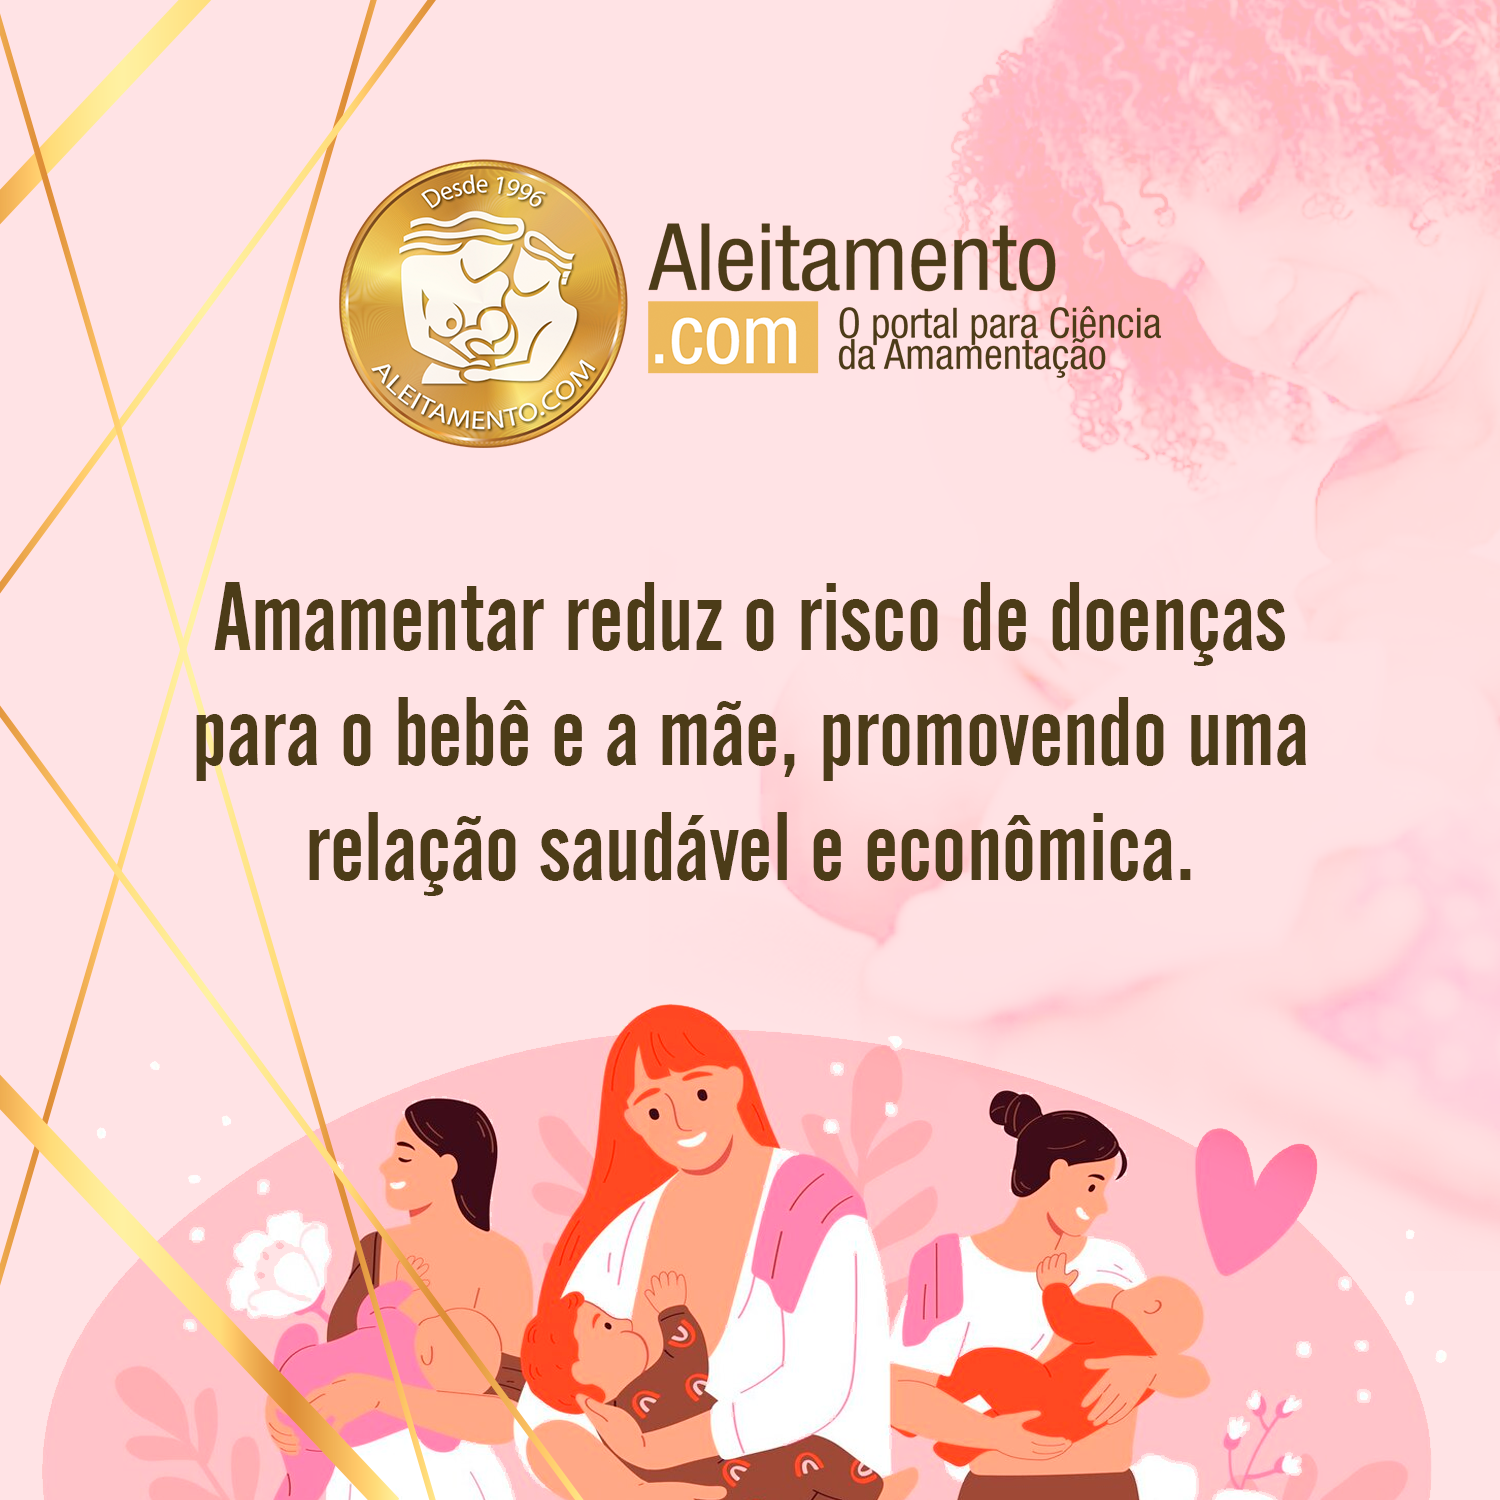 (c) Aleitamento.com.br